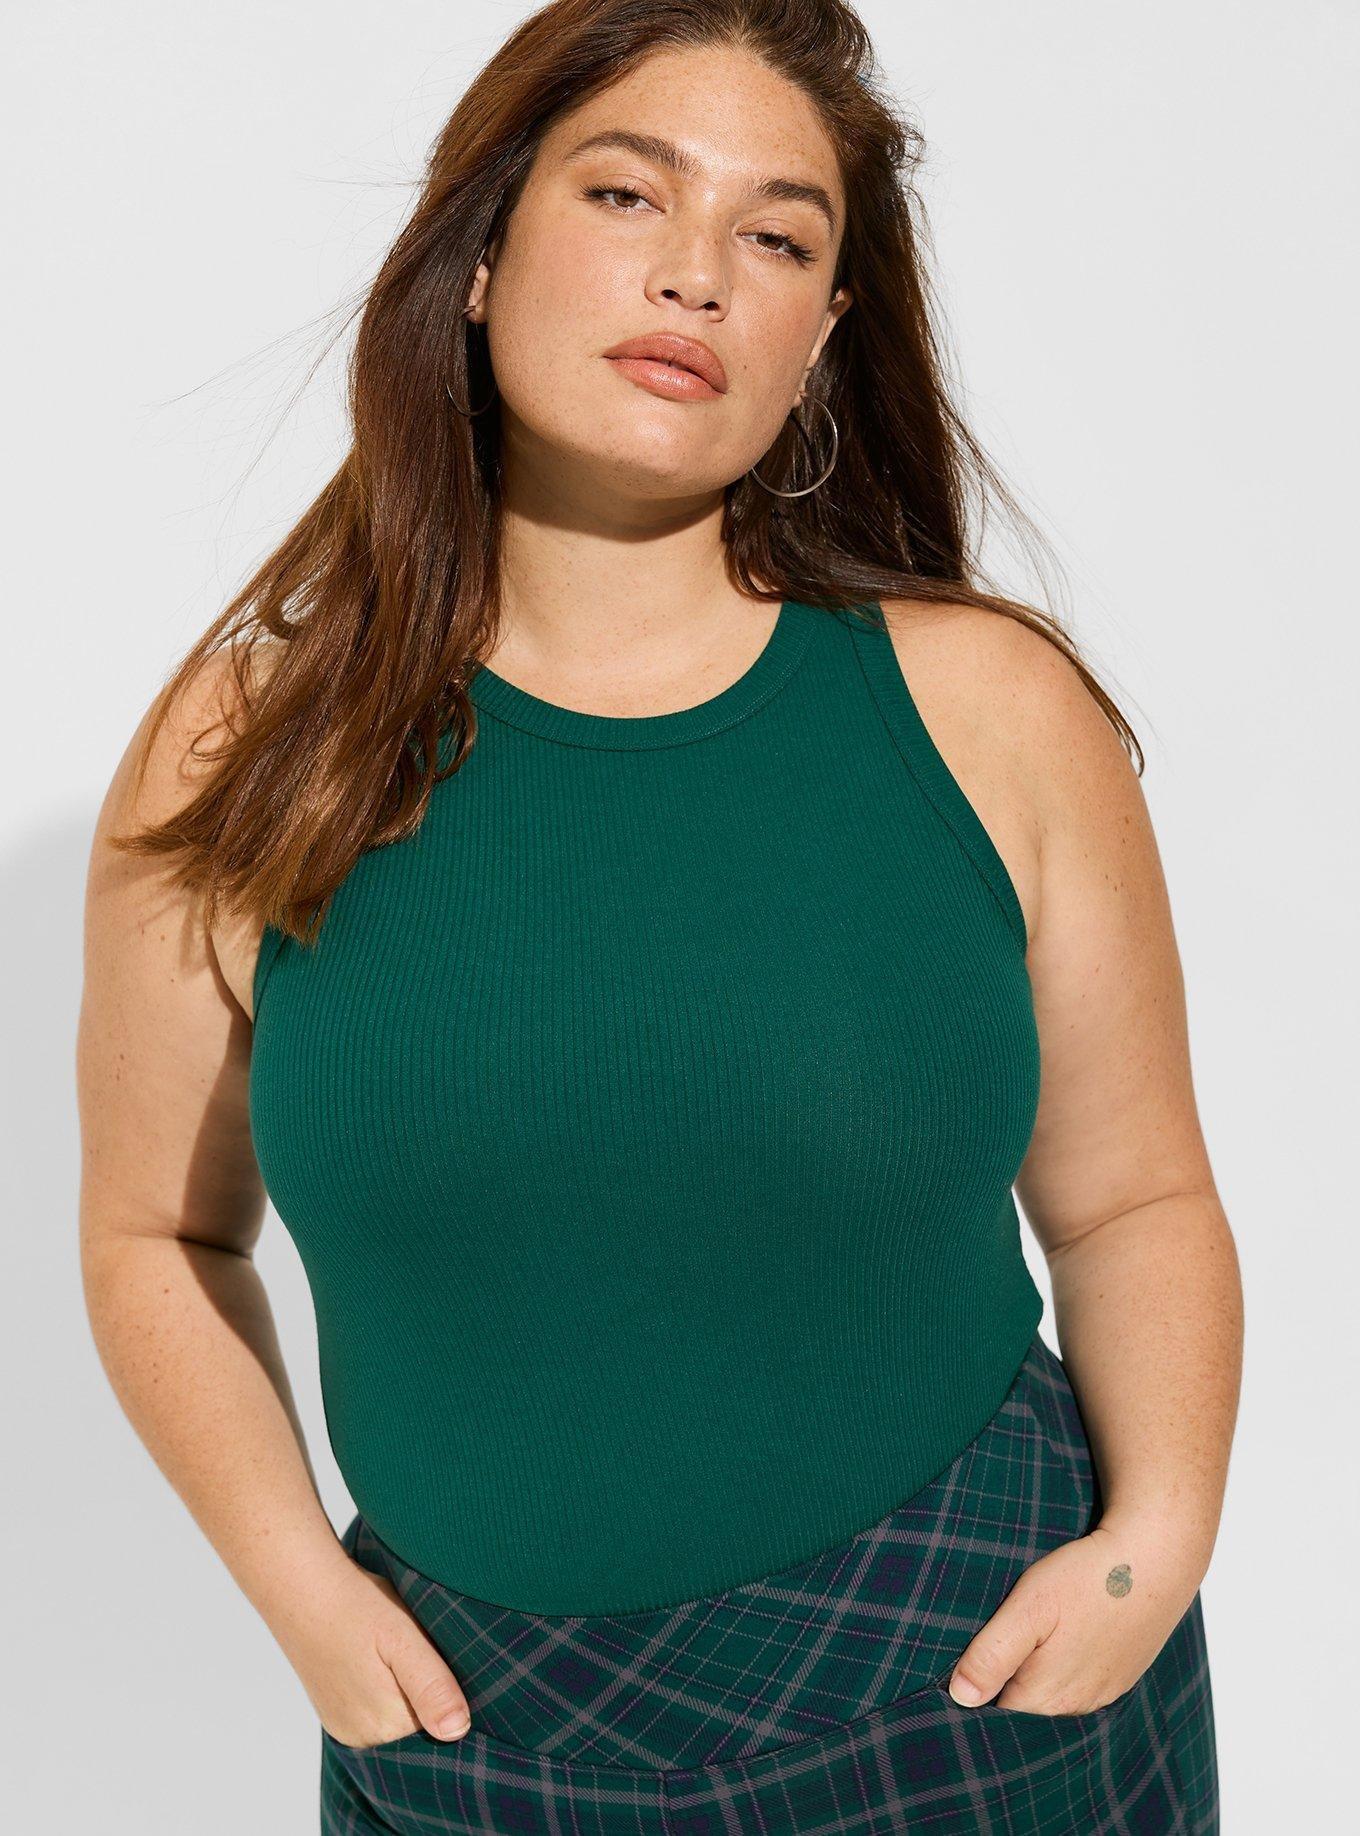 Torrid Mint Green High Neck Jersey Maxi Dress Plus Size Sleeveless Womens 2  2X